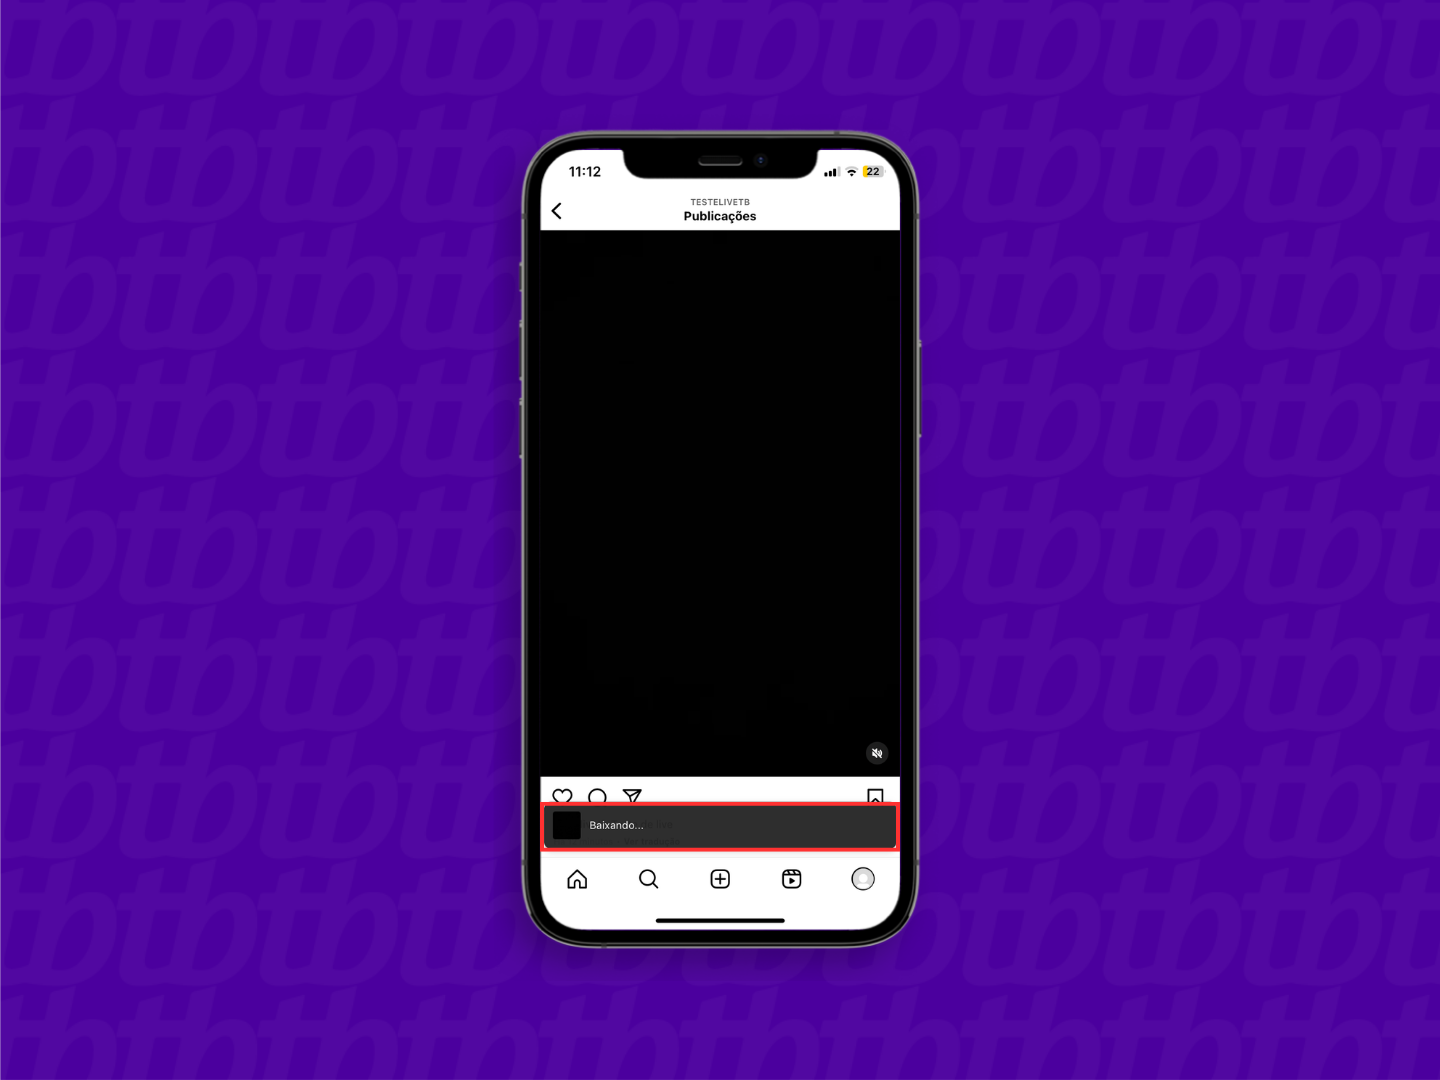 Mockup de celular que mostra um pop-up exibindo a mensagem "baixando".